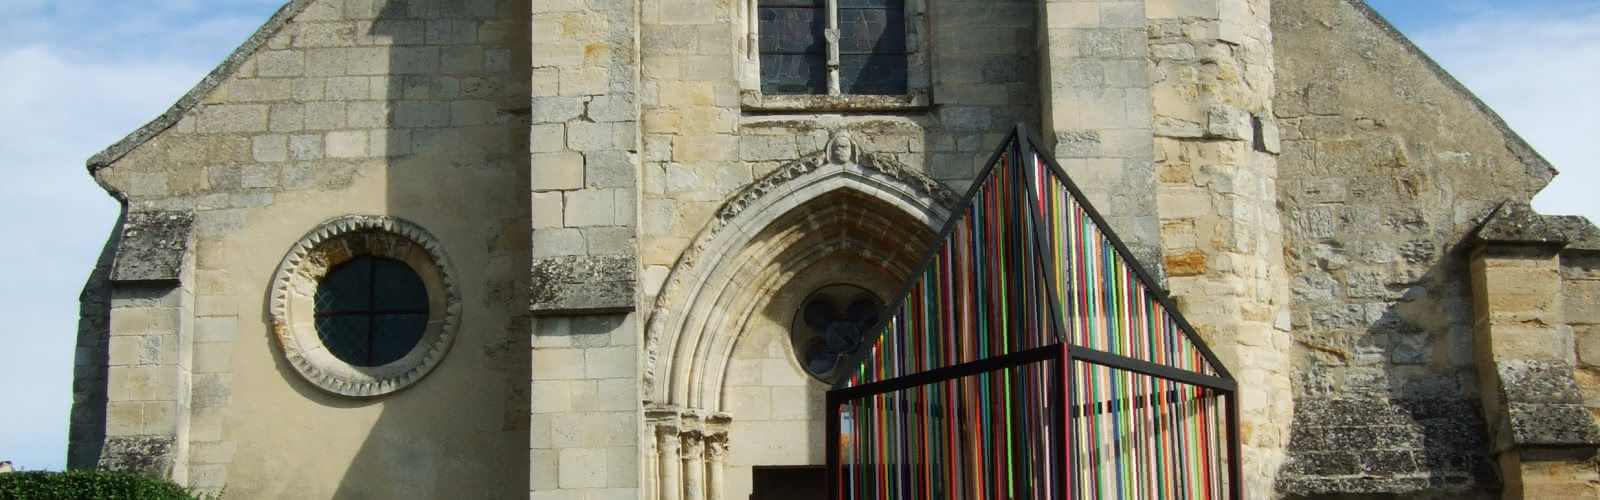 Eglise Saint-Caprais, Grisy-les-Plâtres